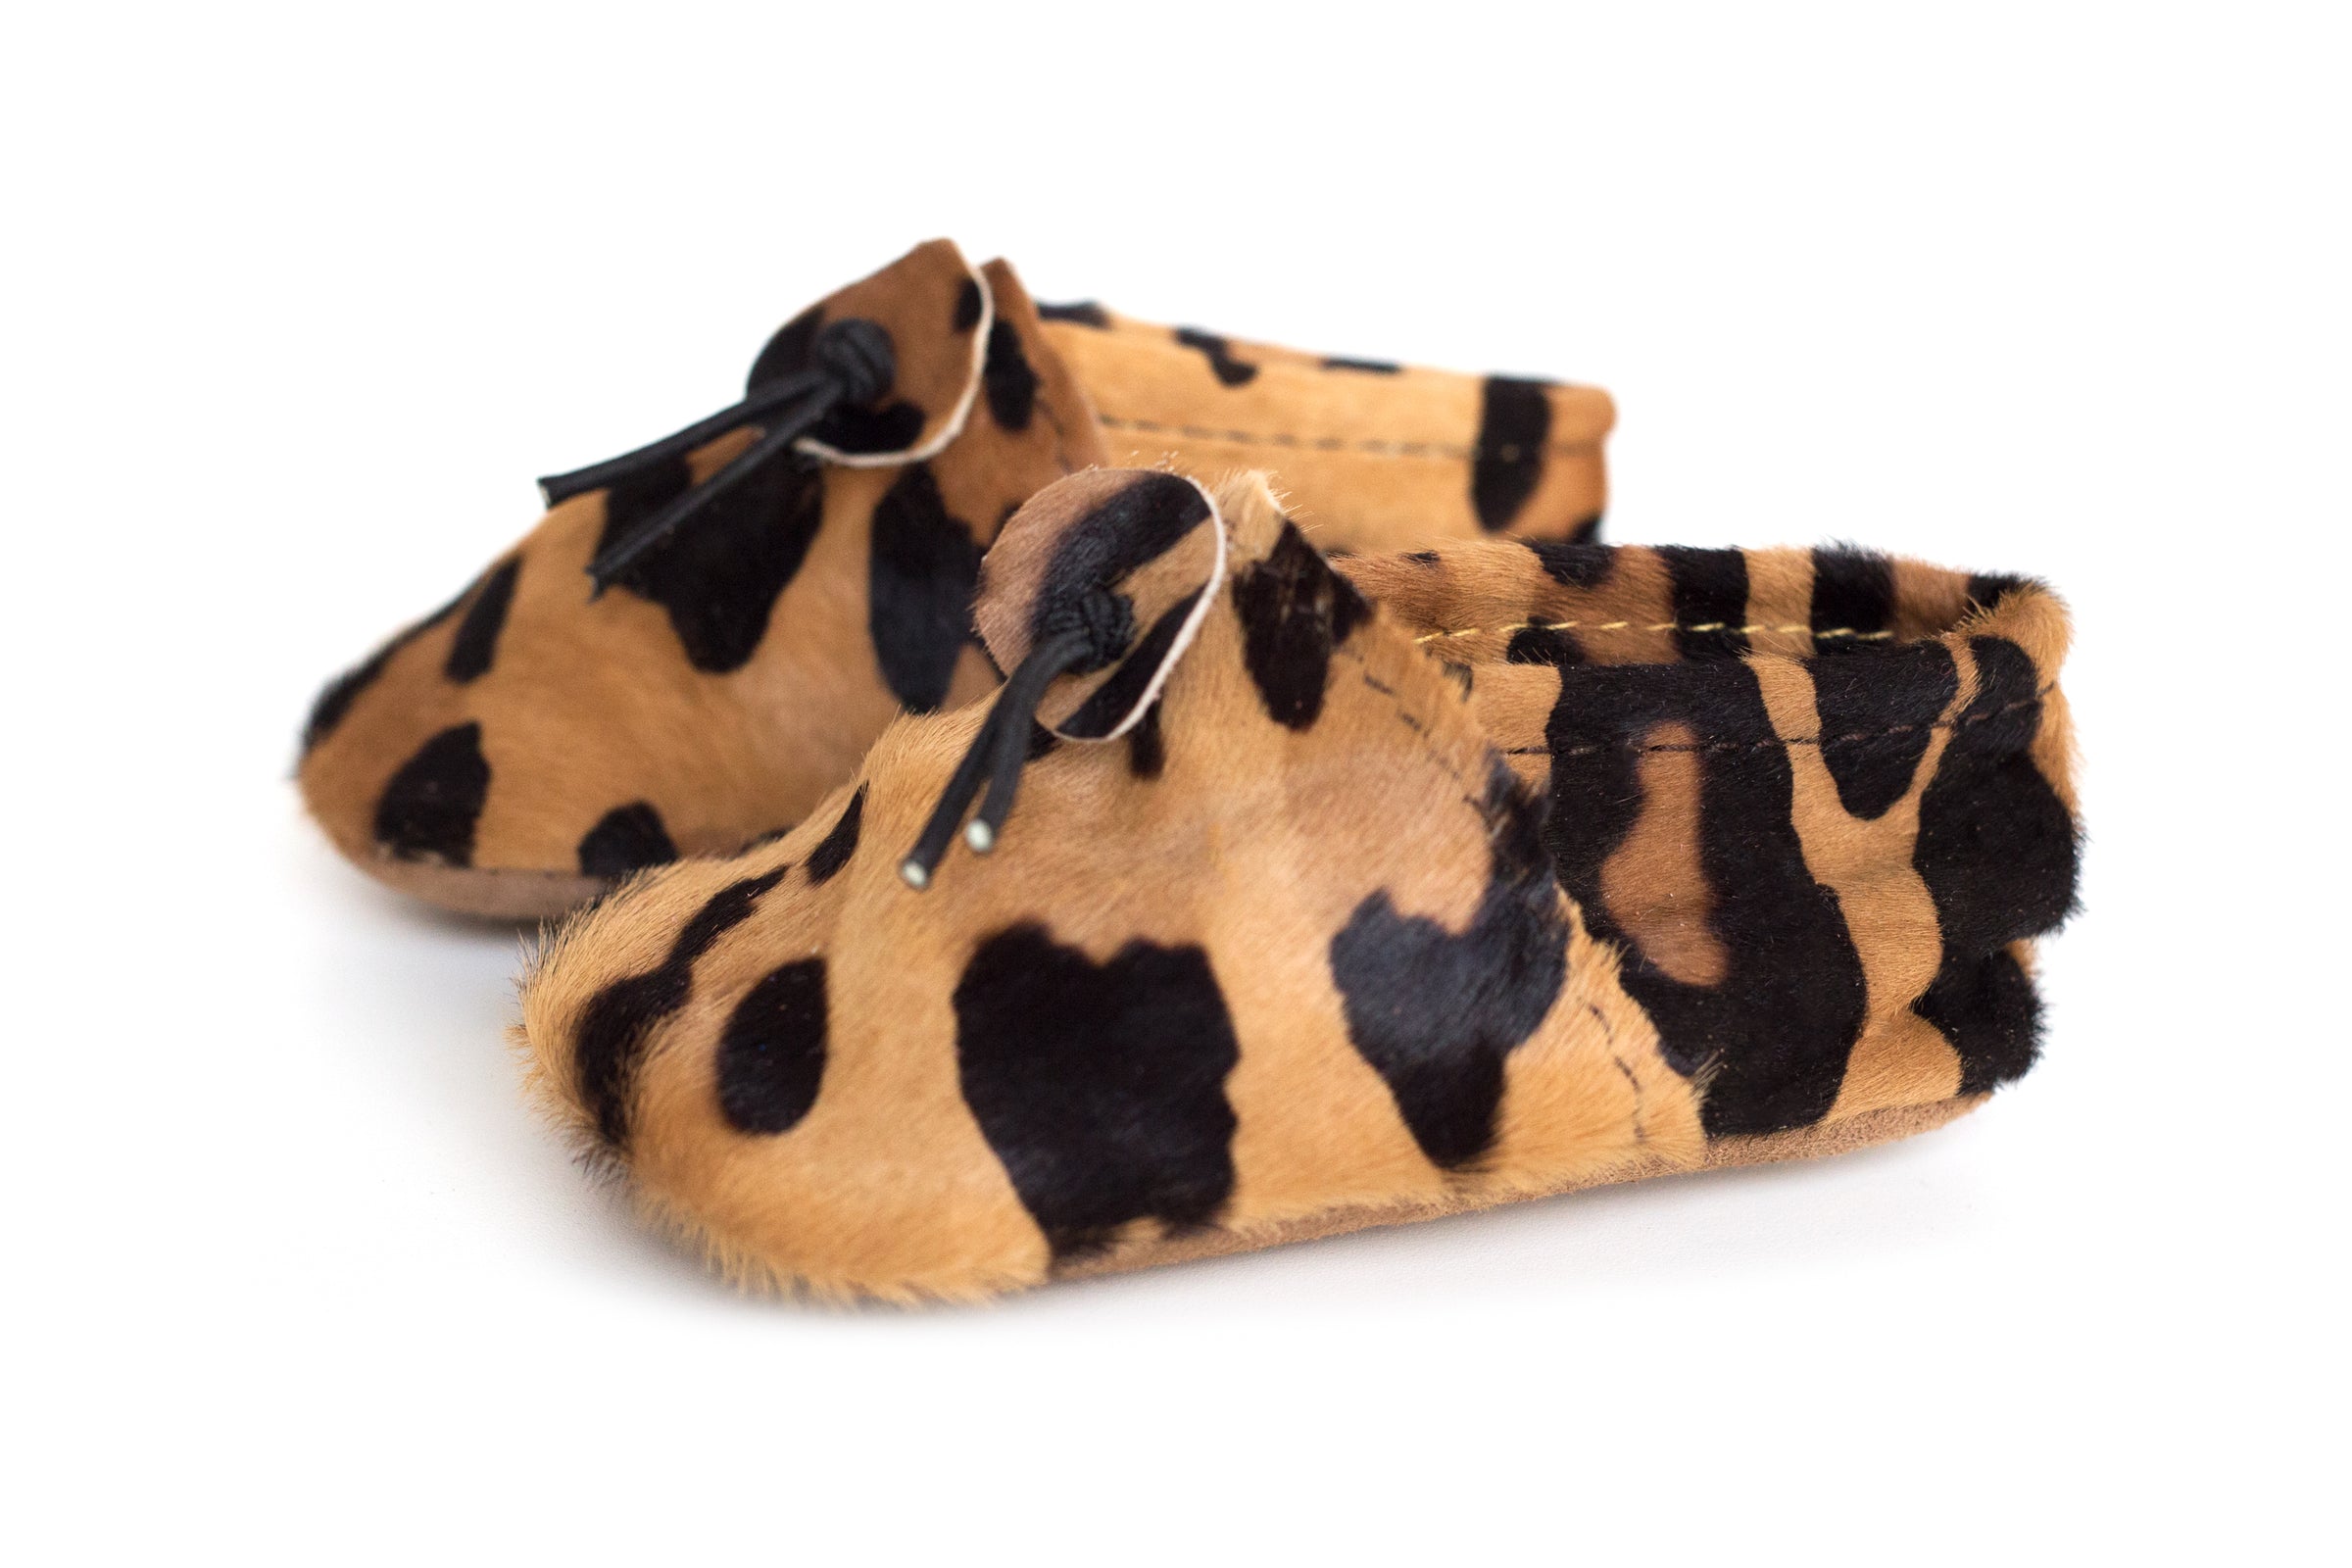 cheetah baby shoes